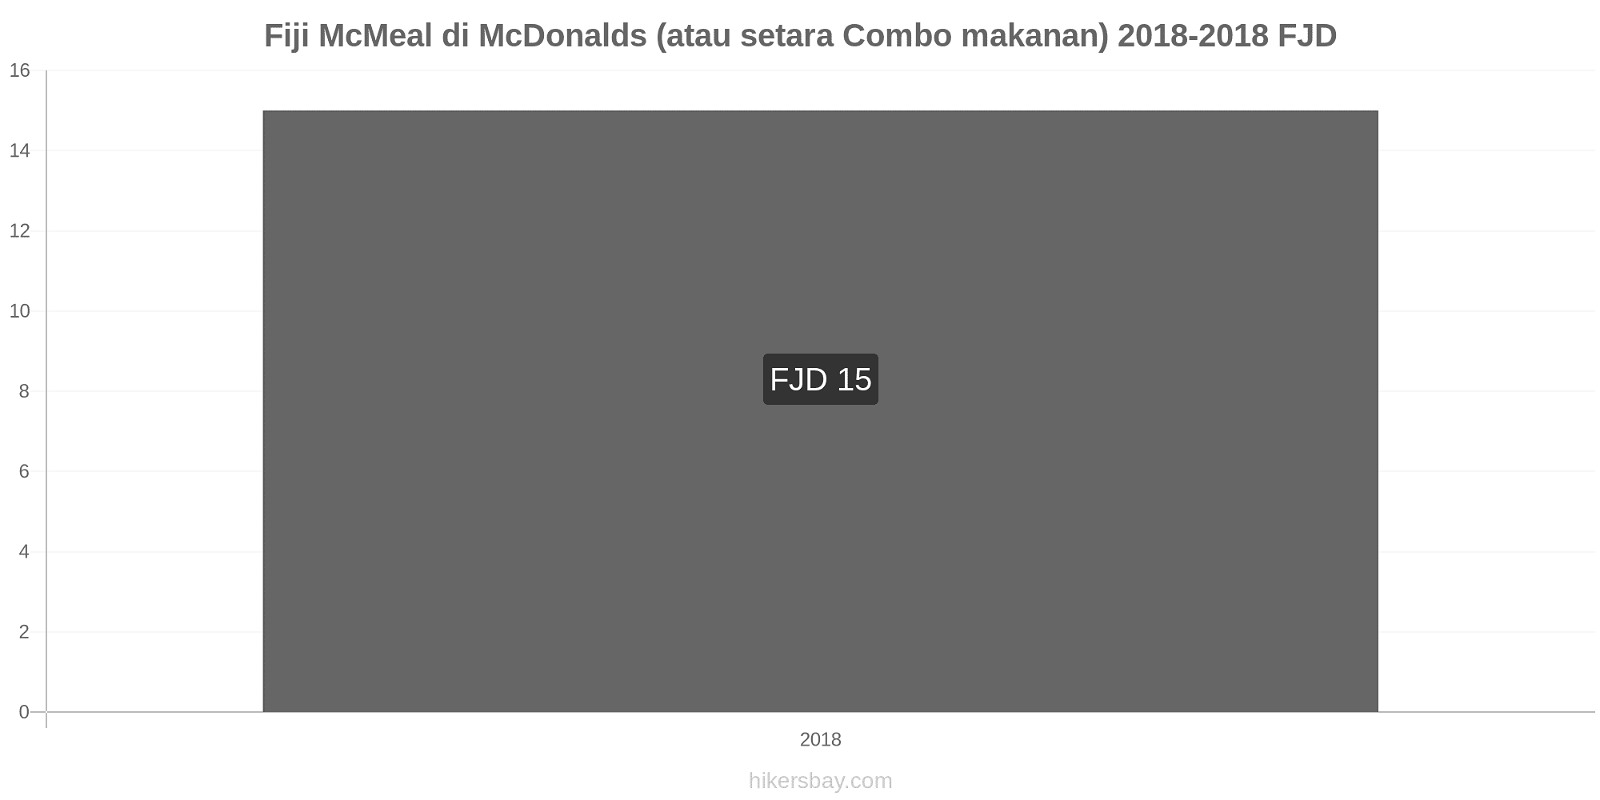 Fiji perubahan harga McMeal di McDonalds (atau setara Combo makanan) hikersbay.com